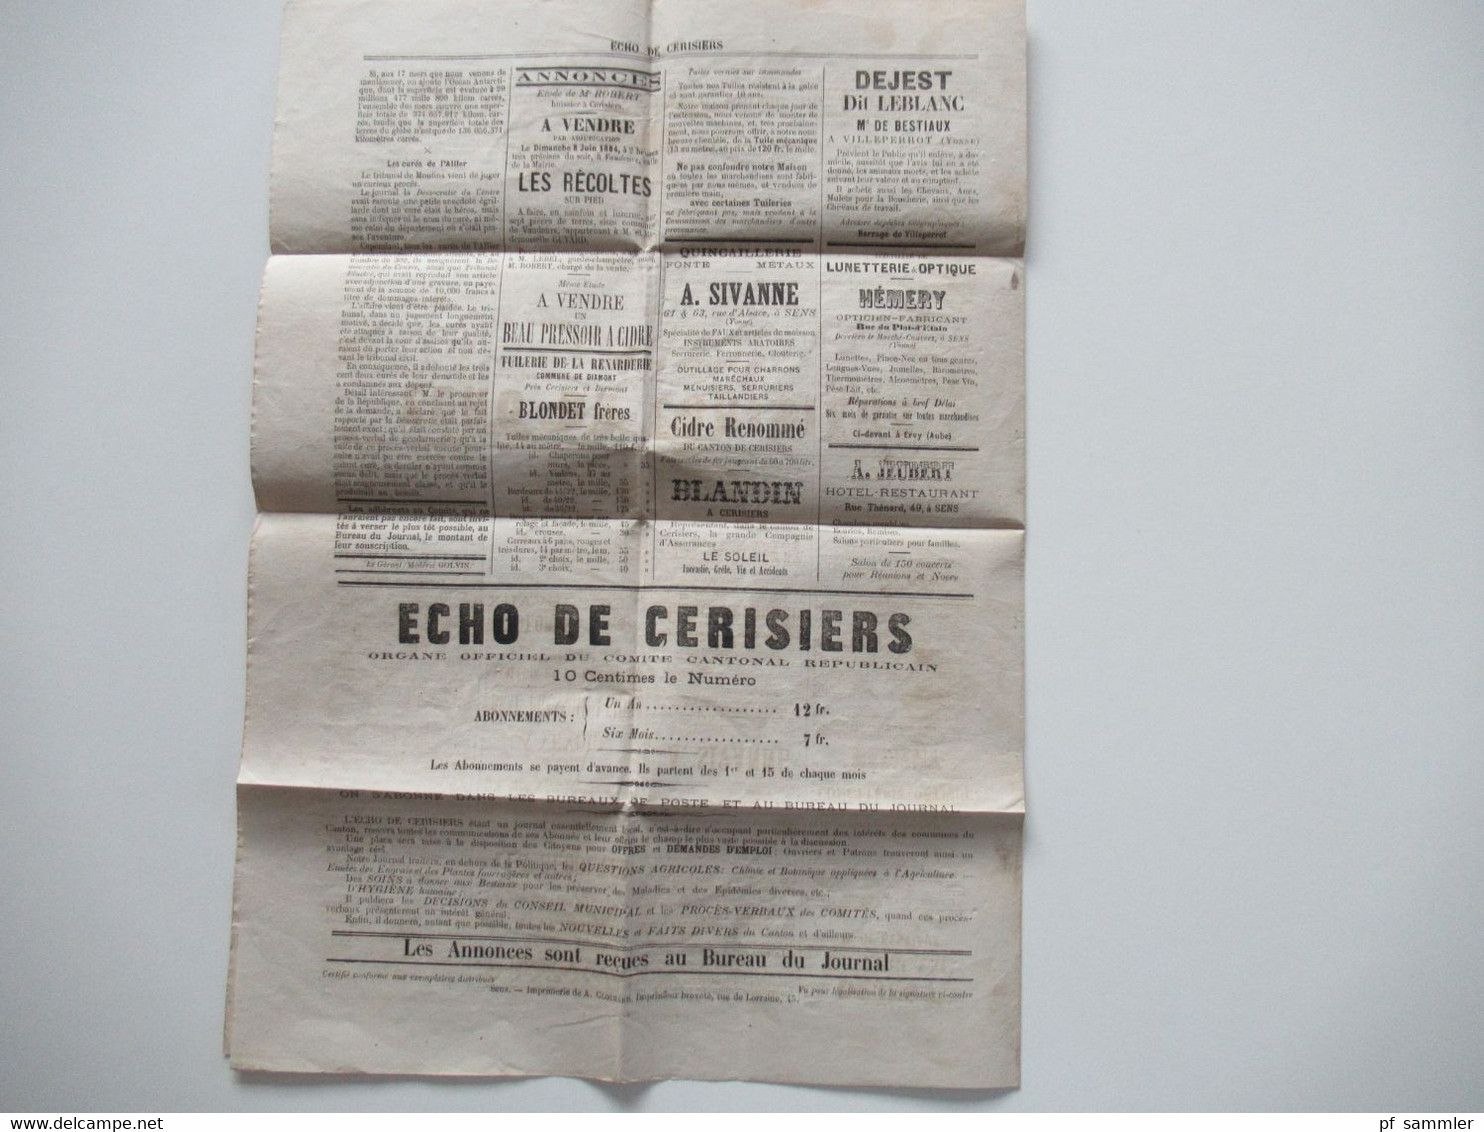 Frankreich 1884 Zeitung Erste Ausgabe / No 1 Ècho De Cerisiers Organe officiel du Comité cantonal républicain Yonne